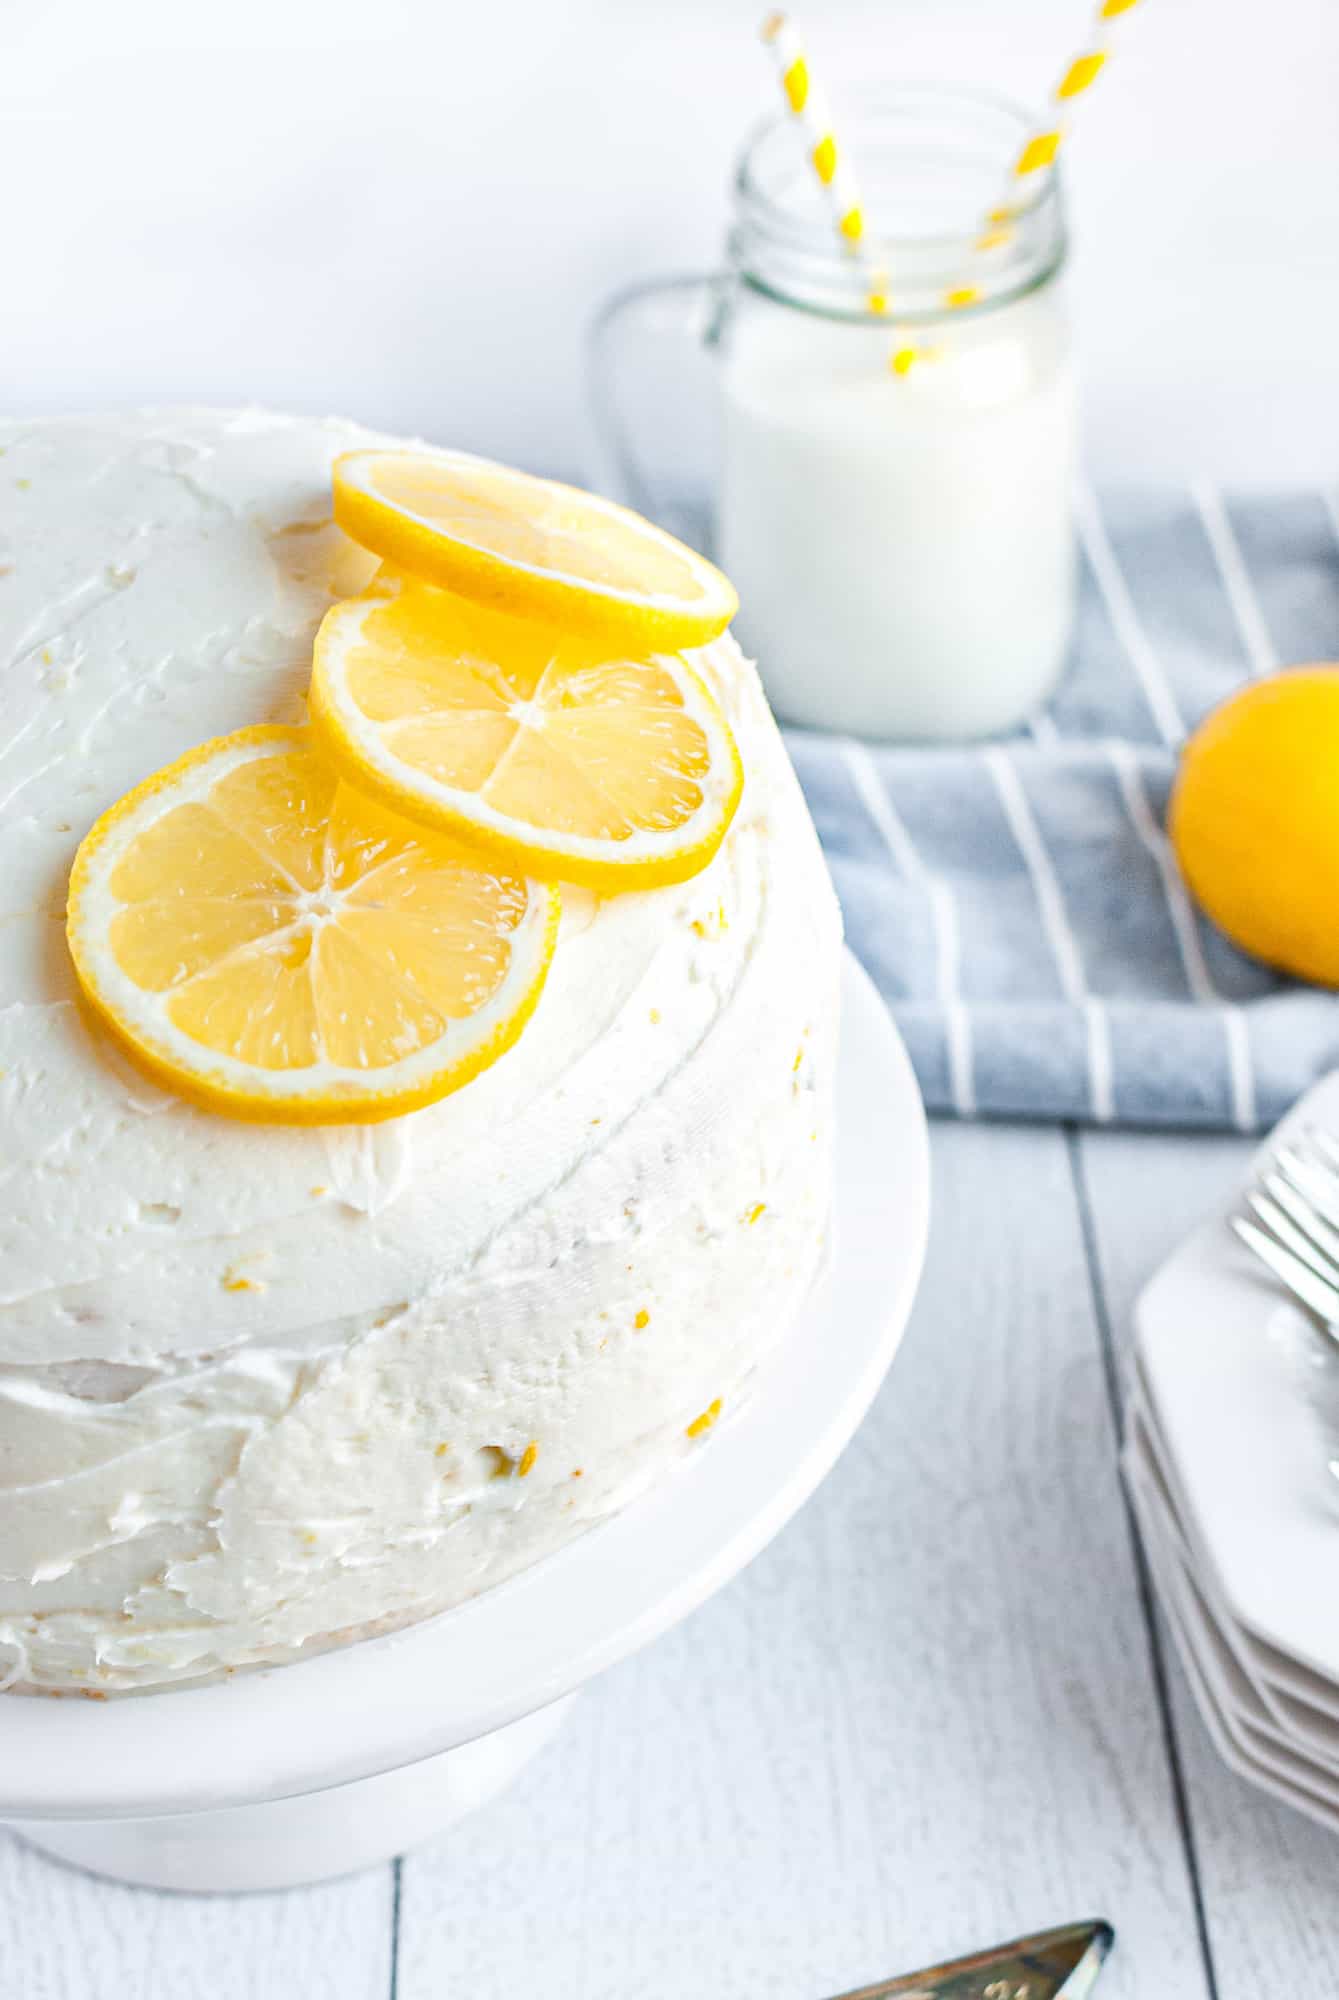 Lemon cake garnished with lemons.